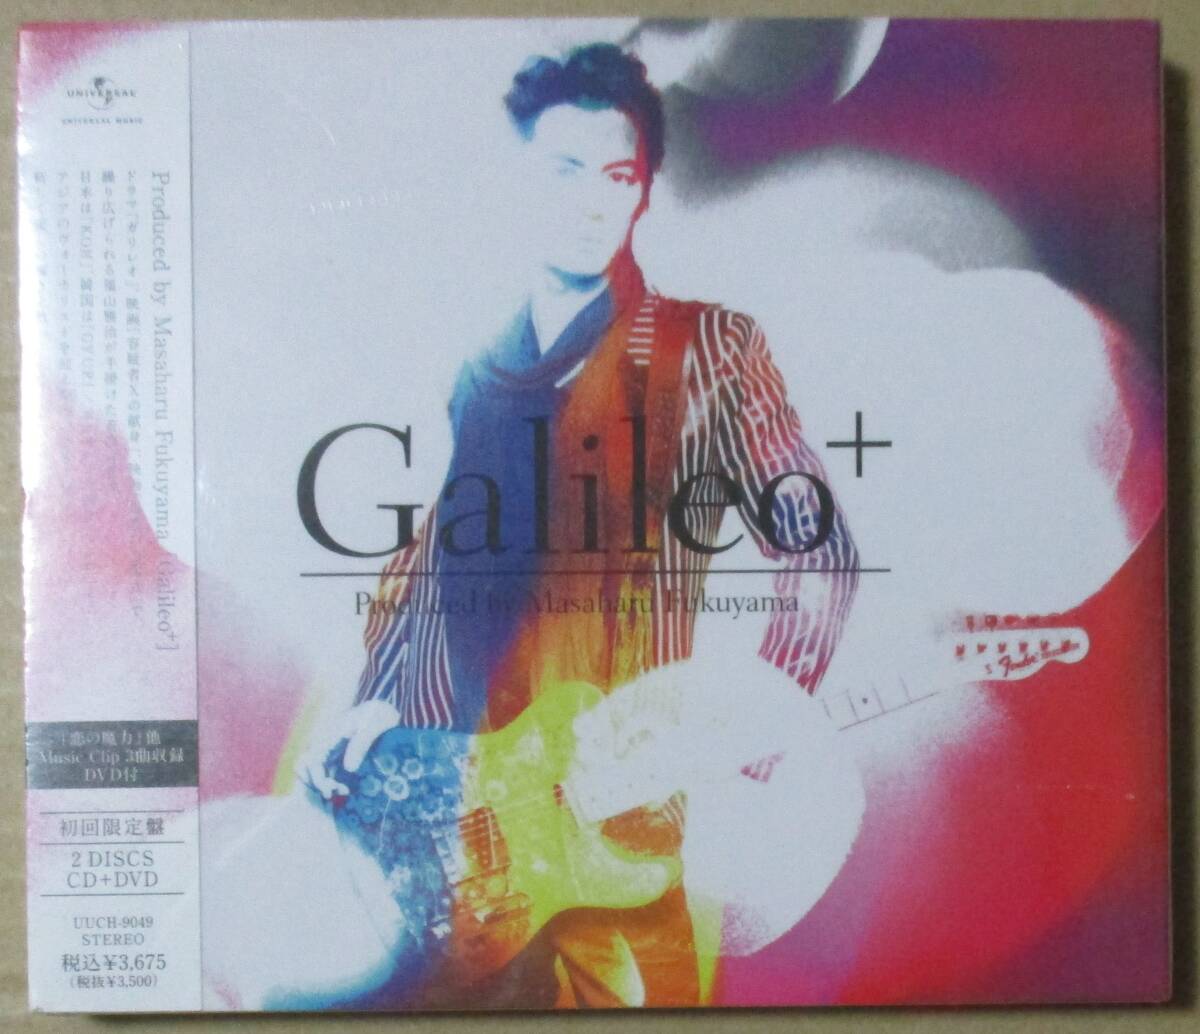 福山雅治 / ガリレオ Galileo + (CD+DVD) 初回_画像1